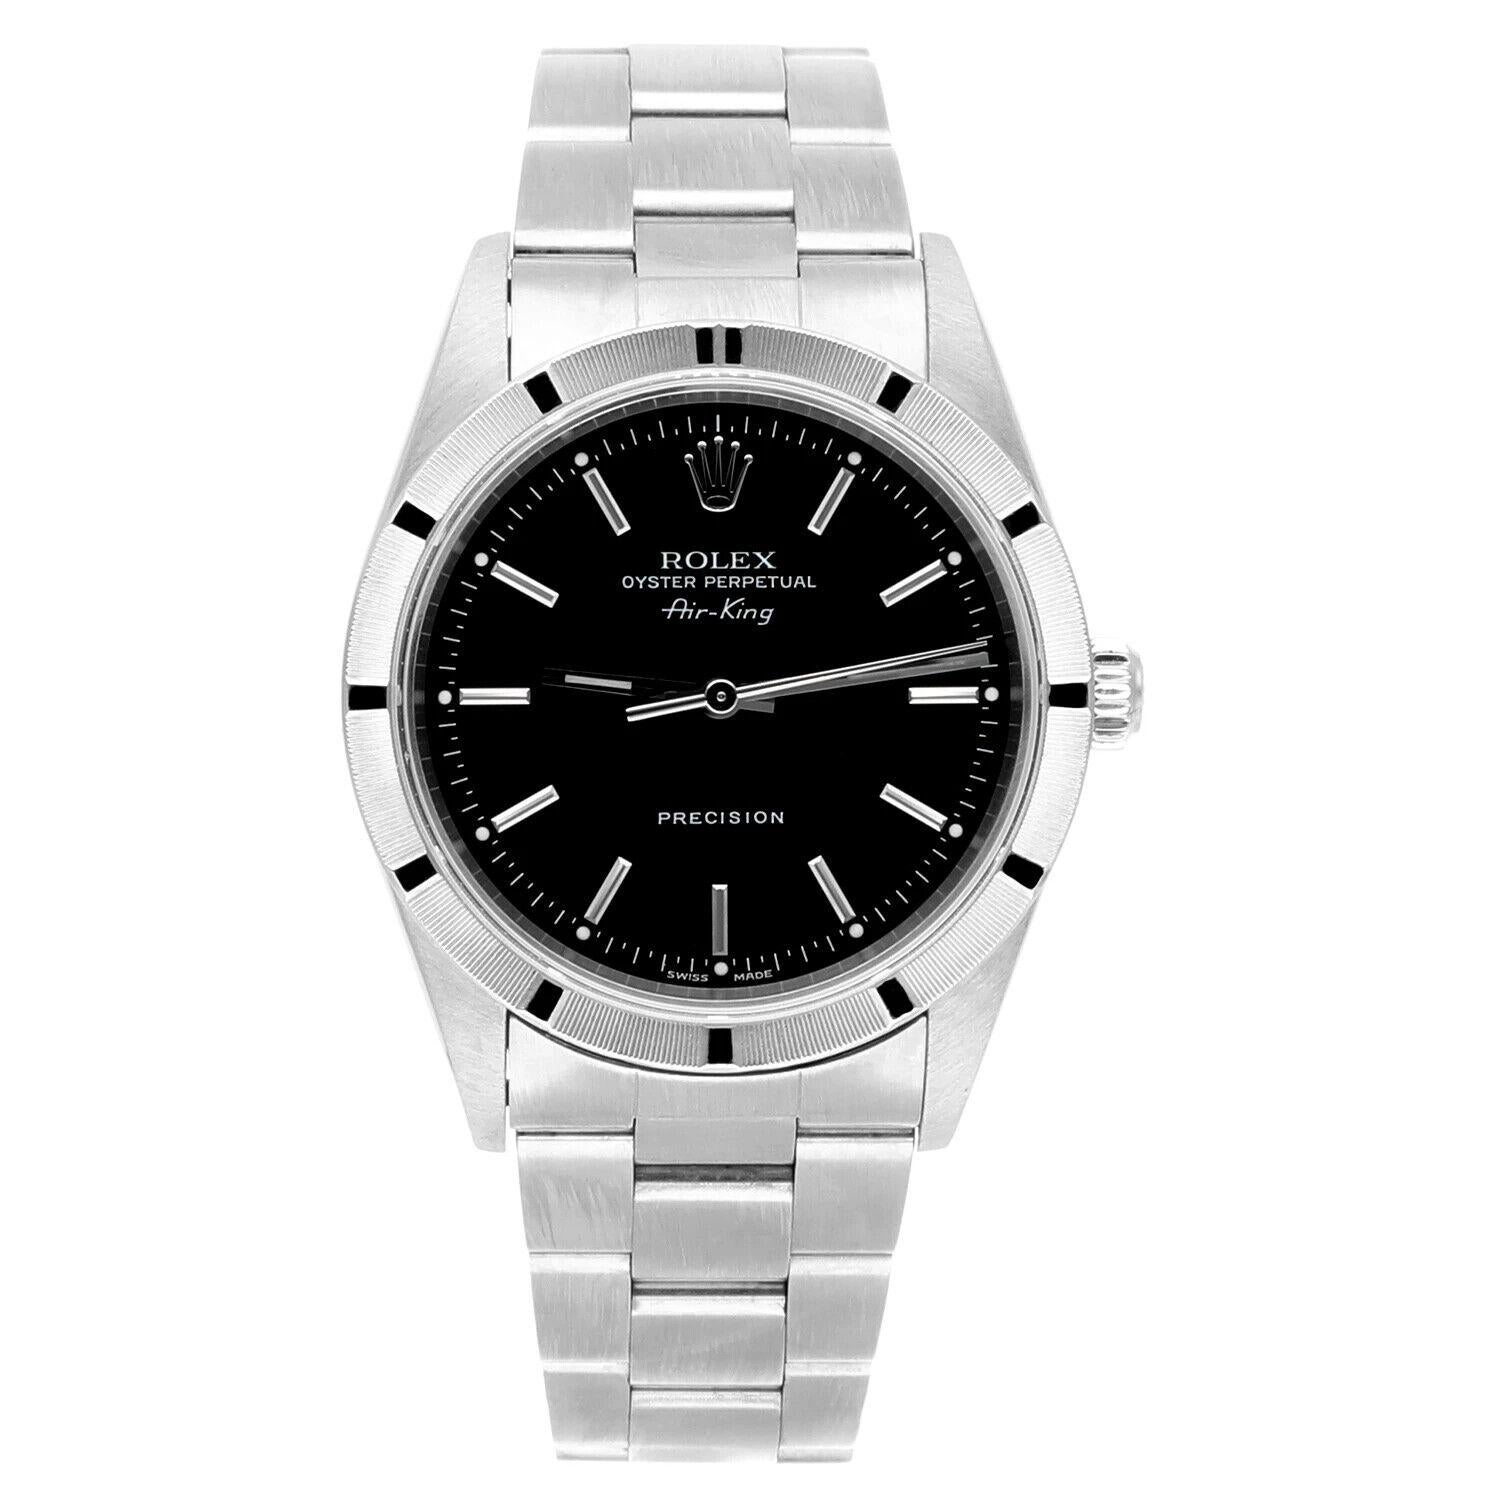 Rolex Air King 34mm Edelstahl Uhr schwarzes Zifferblatt Motor gedreht Lünette Unisex Uhr 14010, Circa 2001 Y-Serie.
Diese Uhr wurde professionell poliert und gewartet und befindet sich in einem ausgezeichneten Gesamtzustand. Es gibt absolut keine